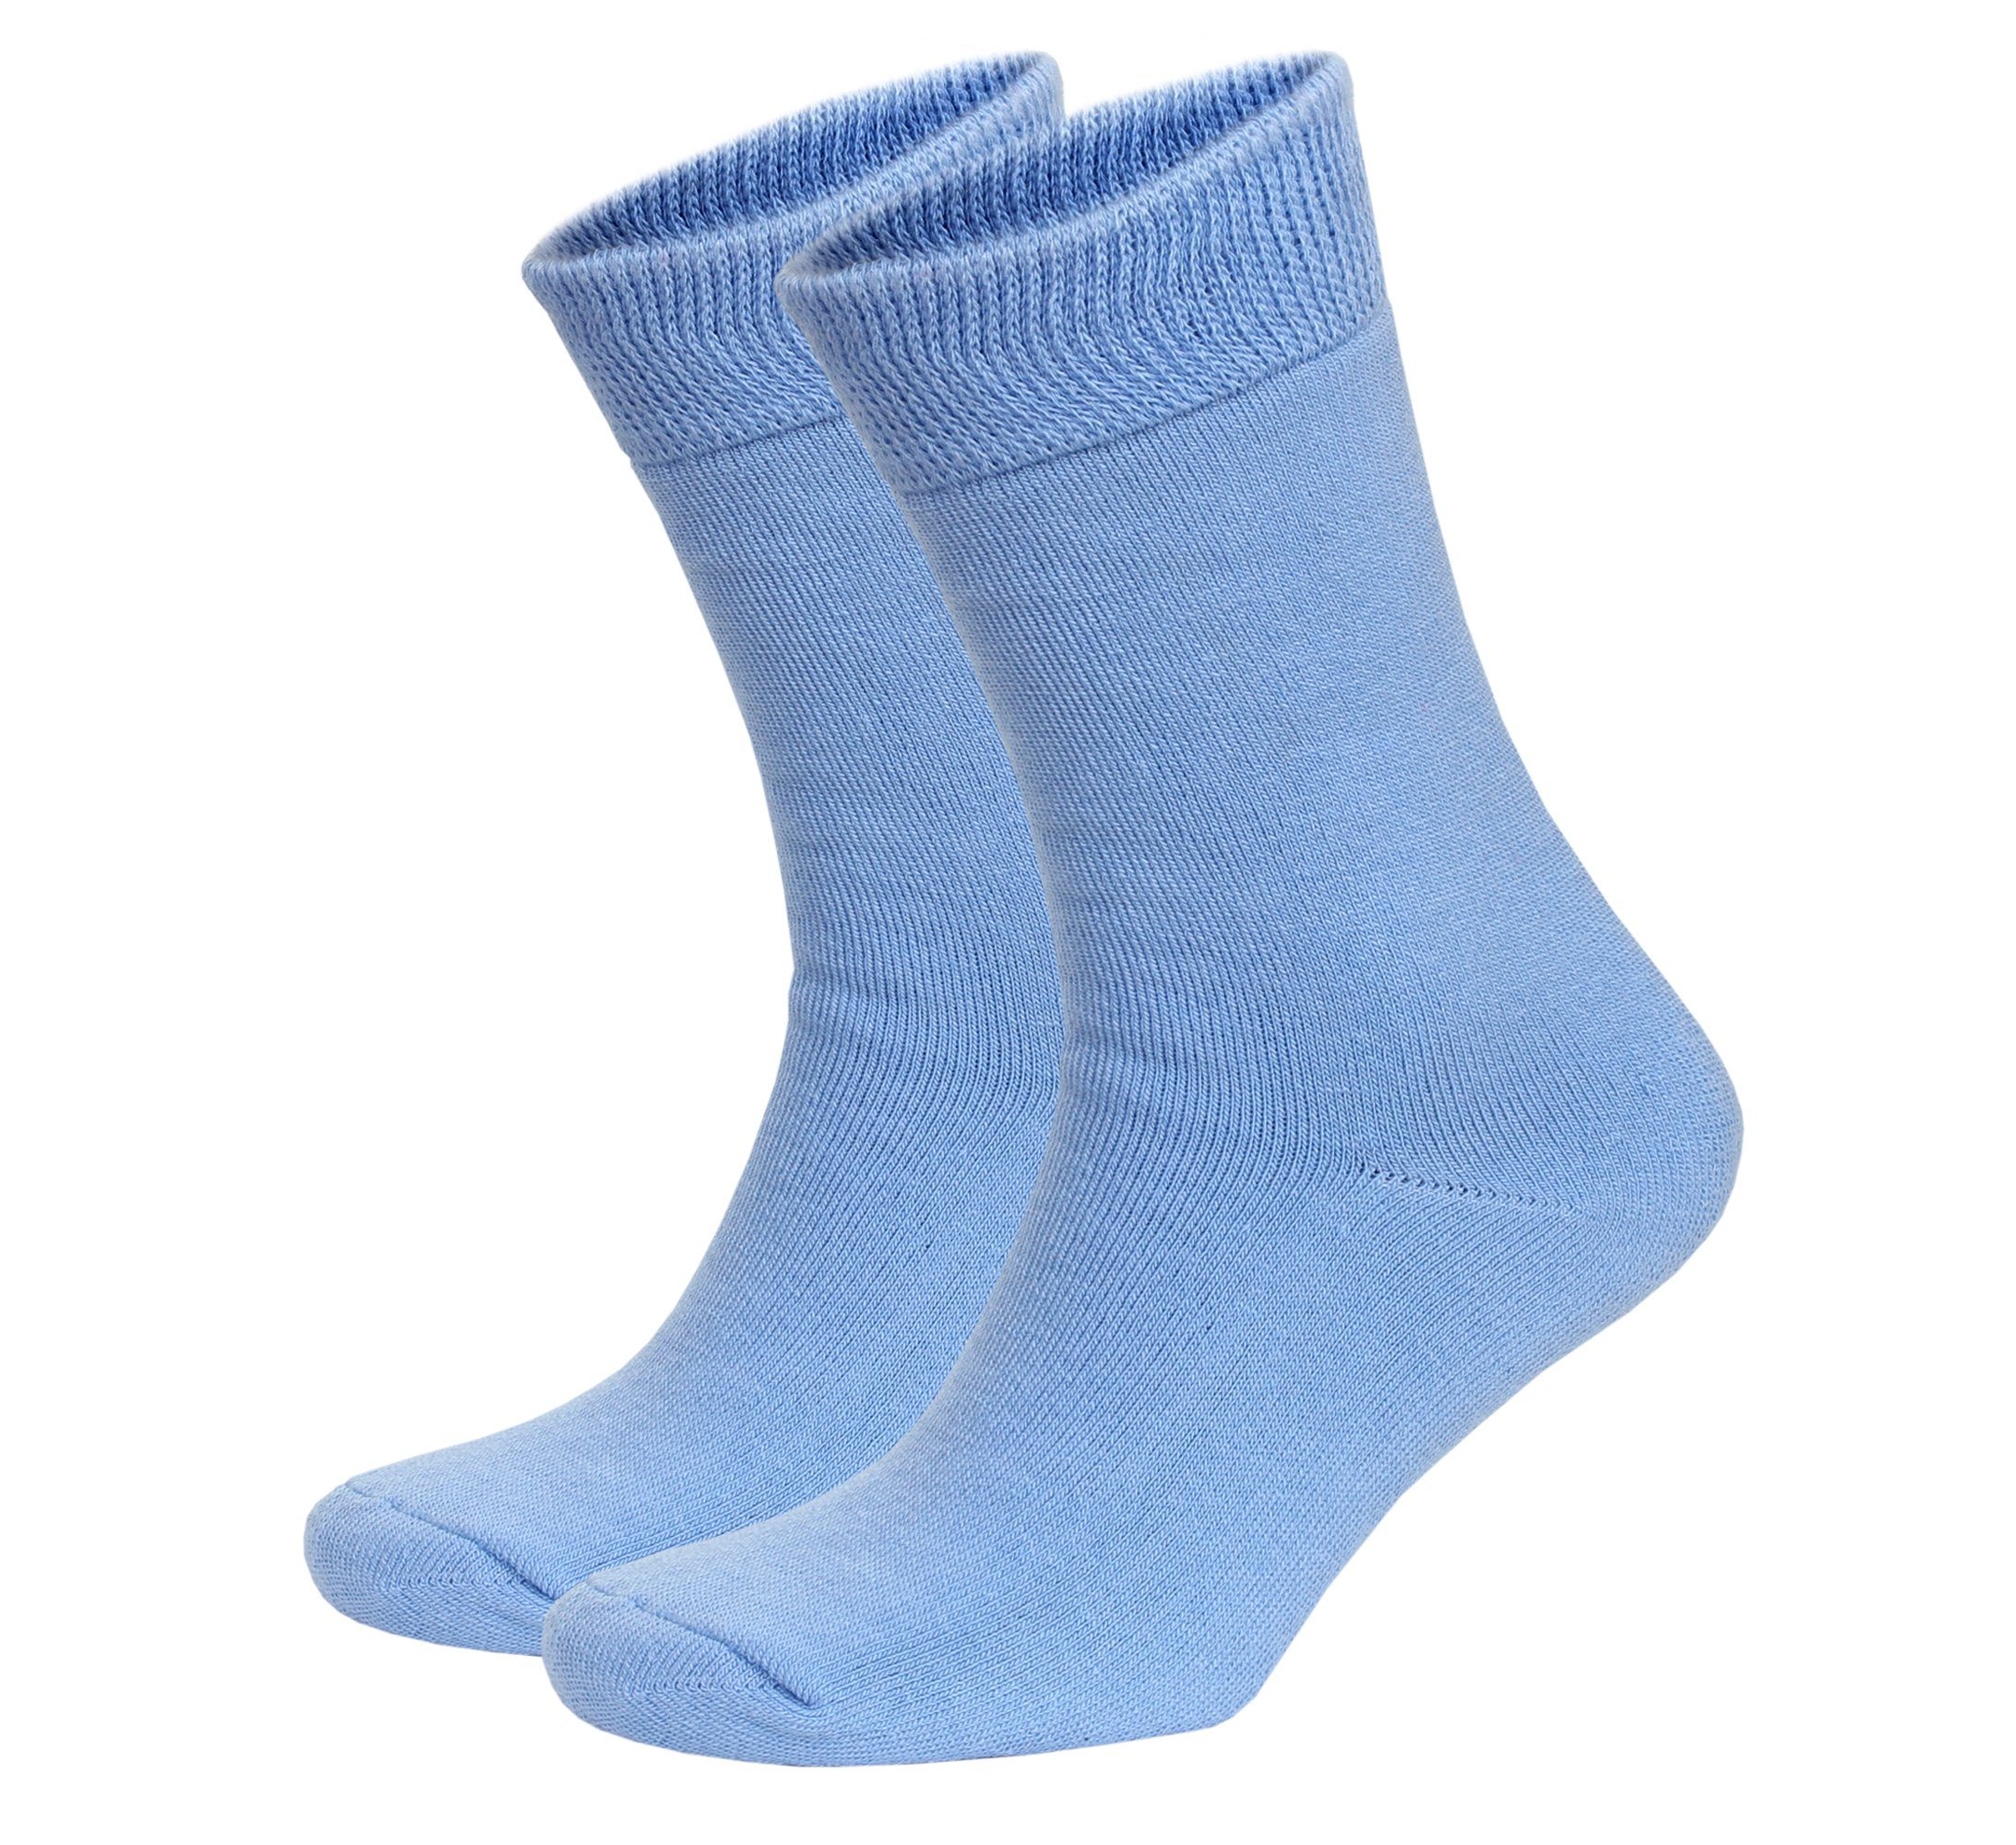 2-Paar, Socken, Größe) Damen Warme EU Blau Damen Wintersocken Arbeitssocken Damen (Beutel, 37-40 Thermosocken NoblesBox